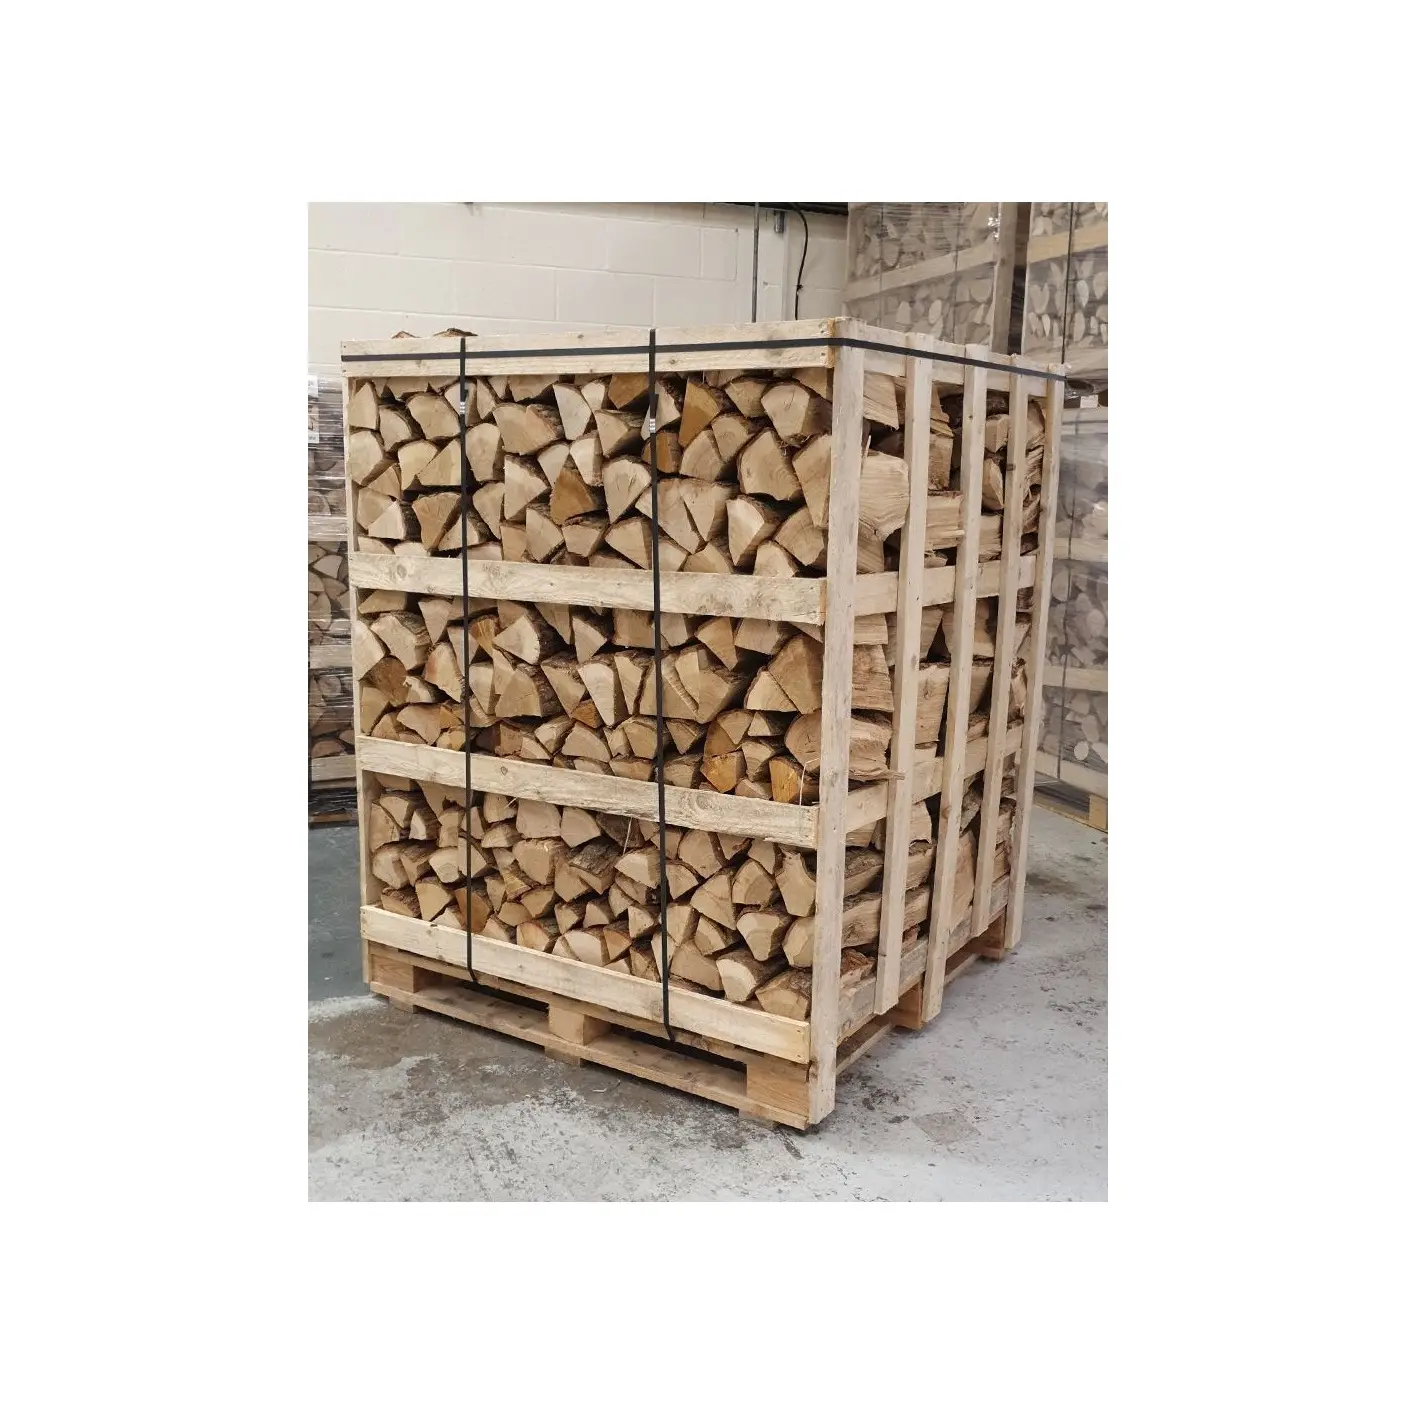 En kaliteli fırın kurutulmuş bölünmüş yakacak odun/meşe odun fırın 5-15 cm paletler üzerinde kurutulmuş